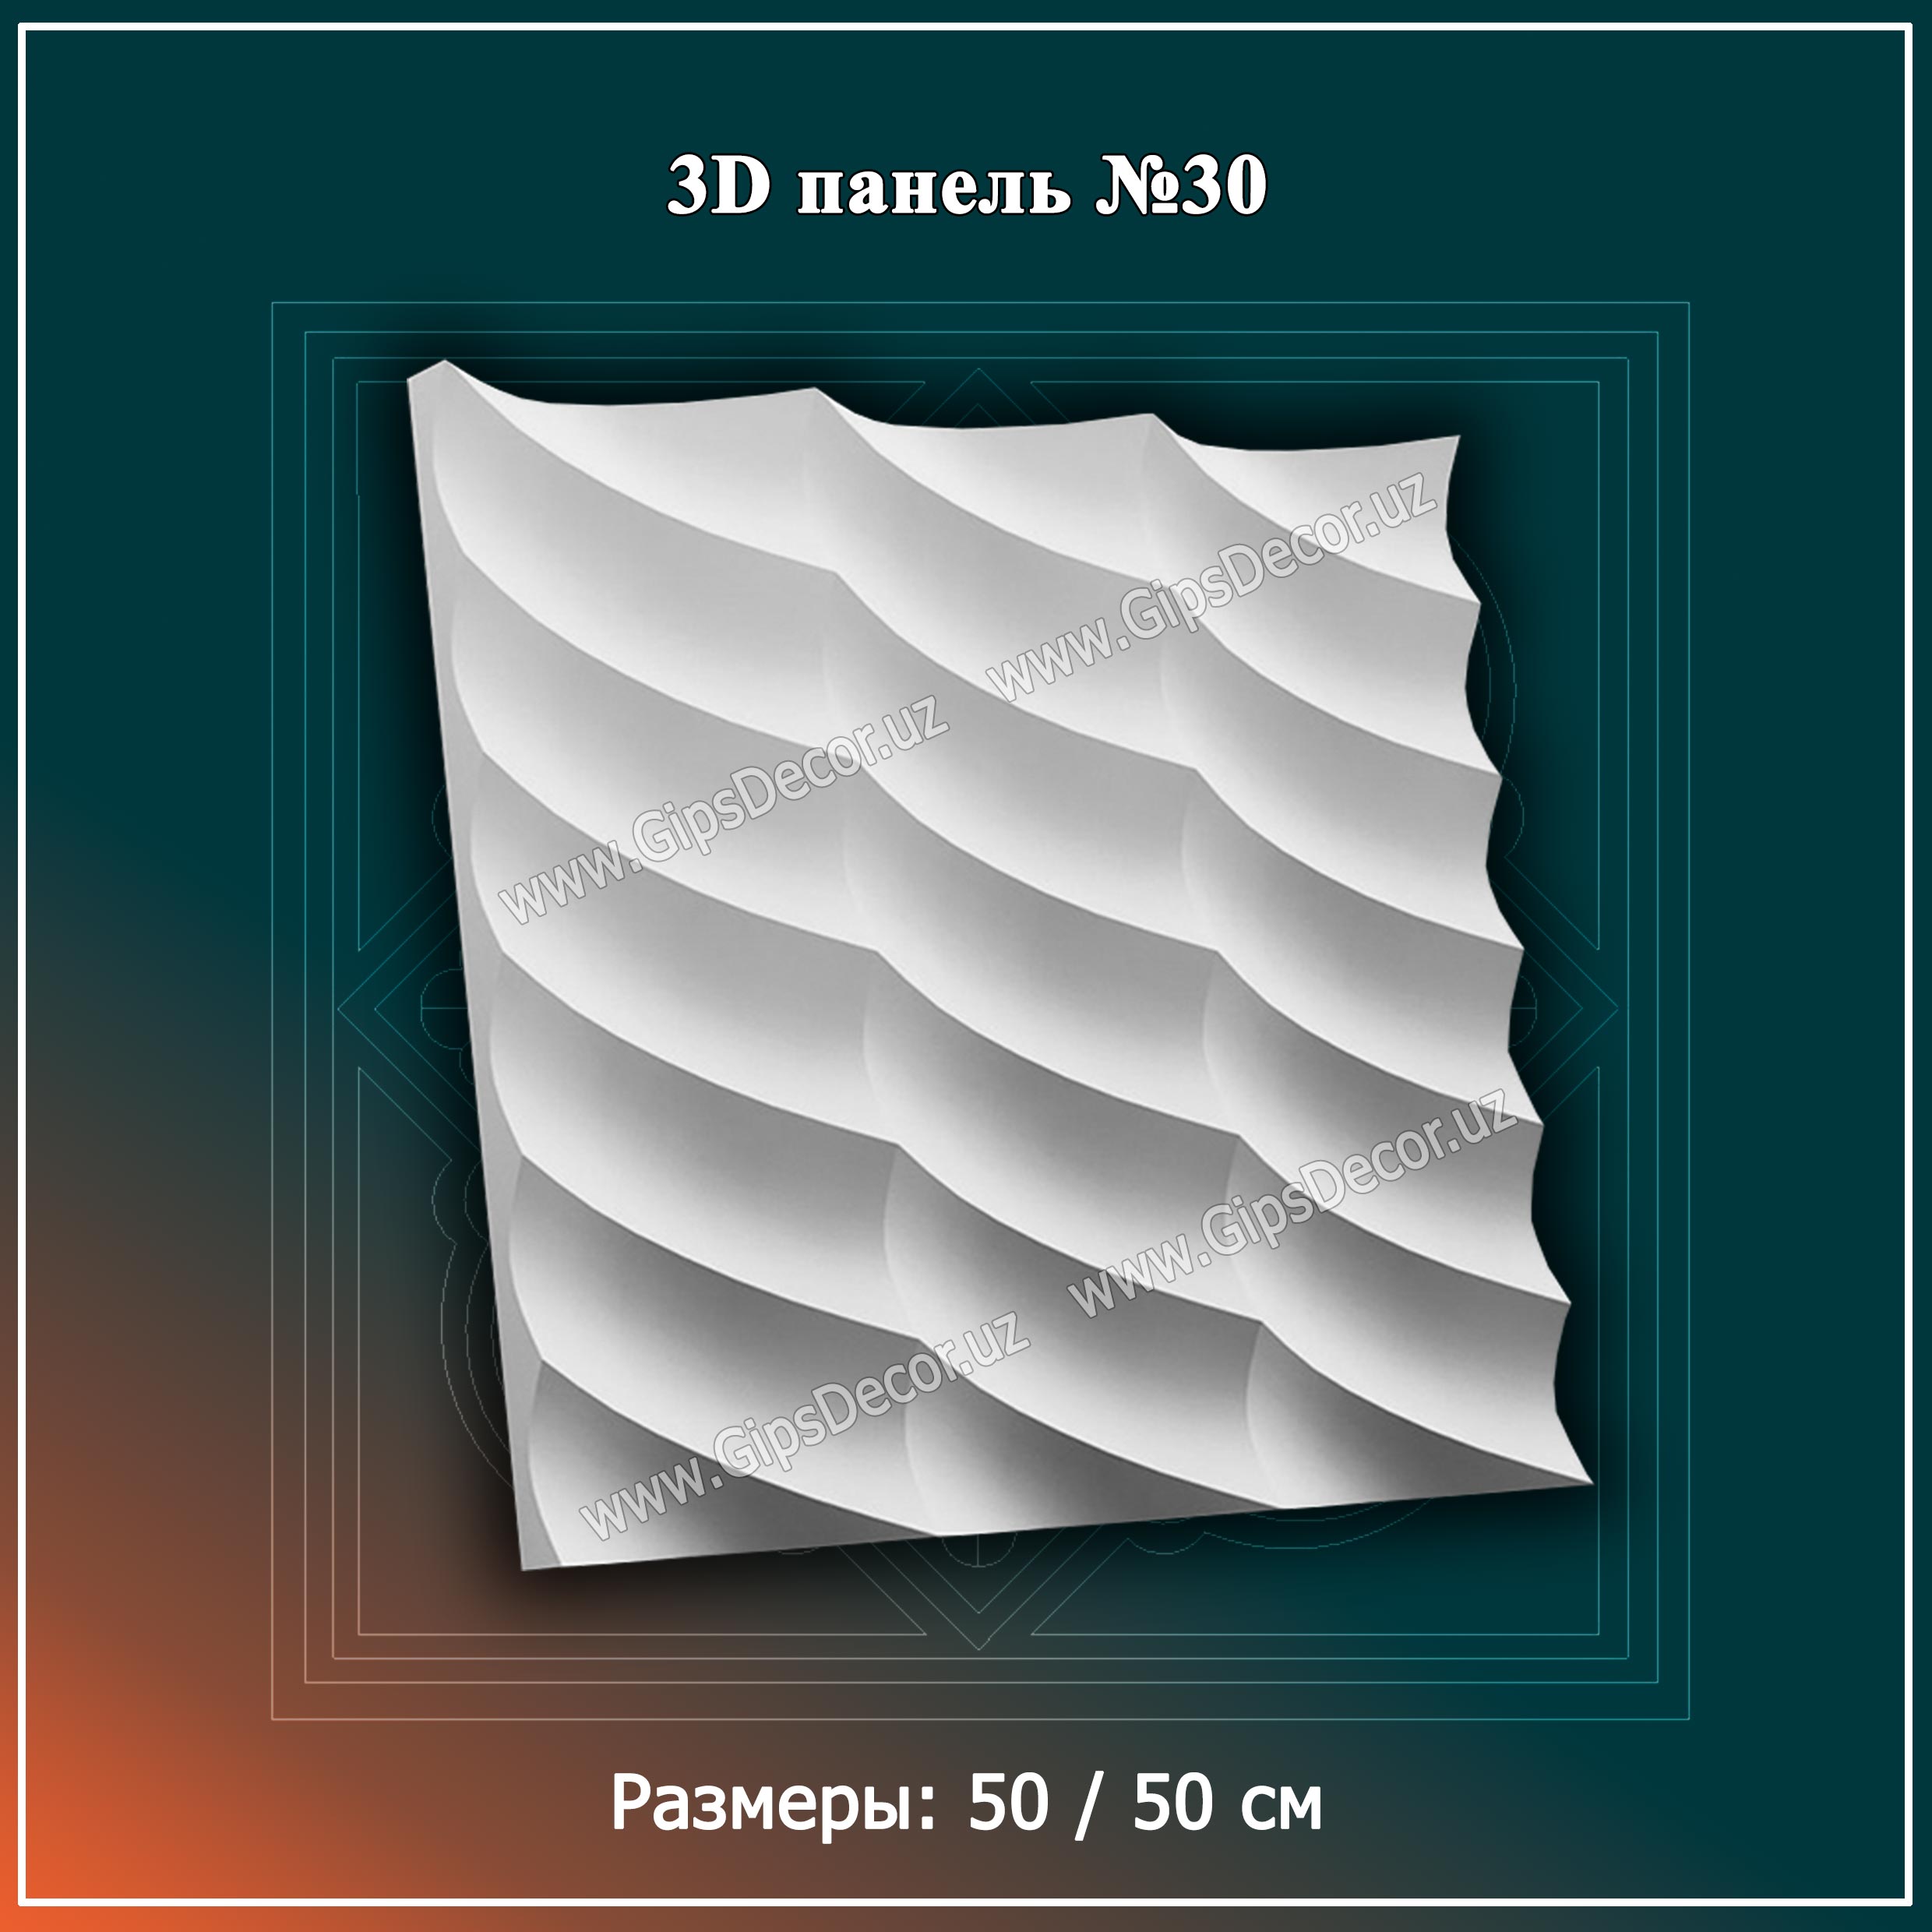 3D панель №30